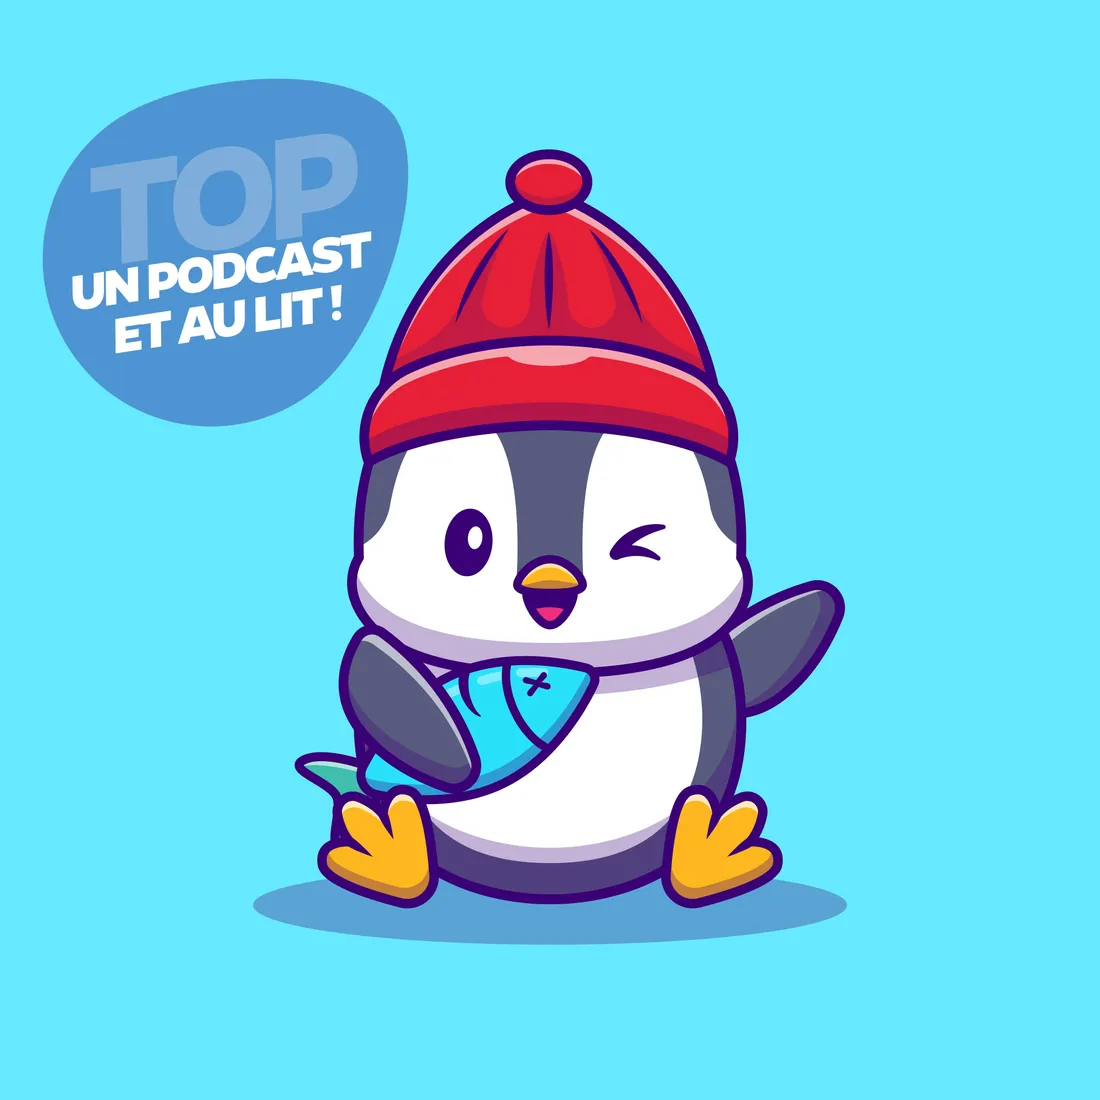 Le pingouin aux pieds bleus - Un podcast et au lit !